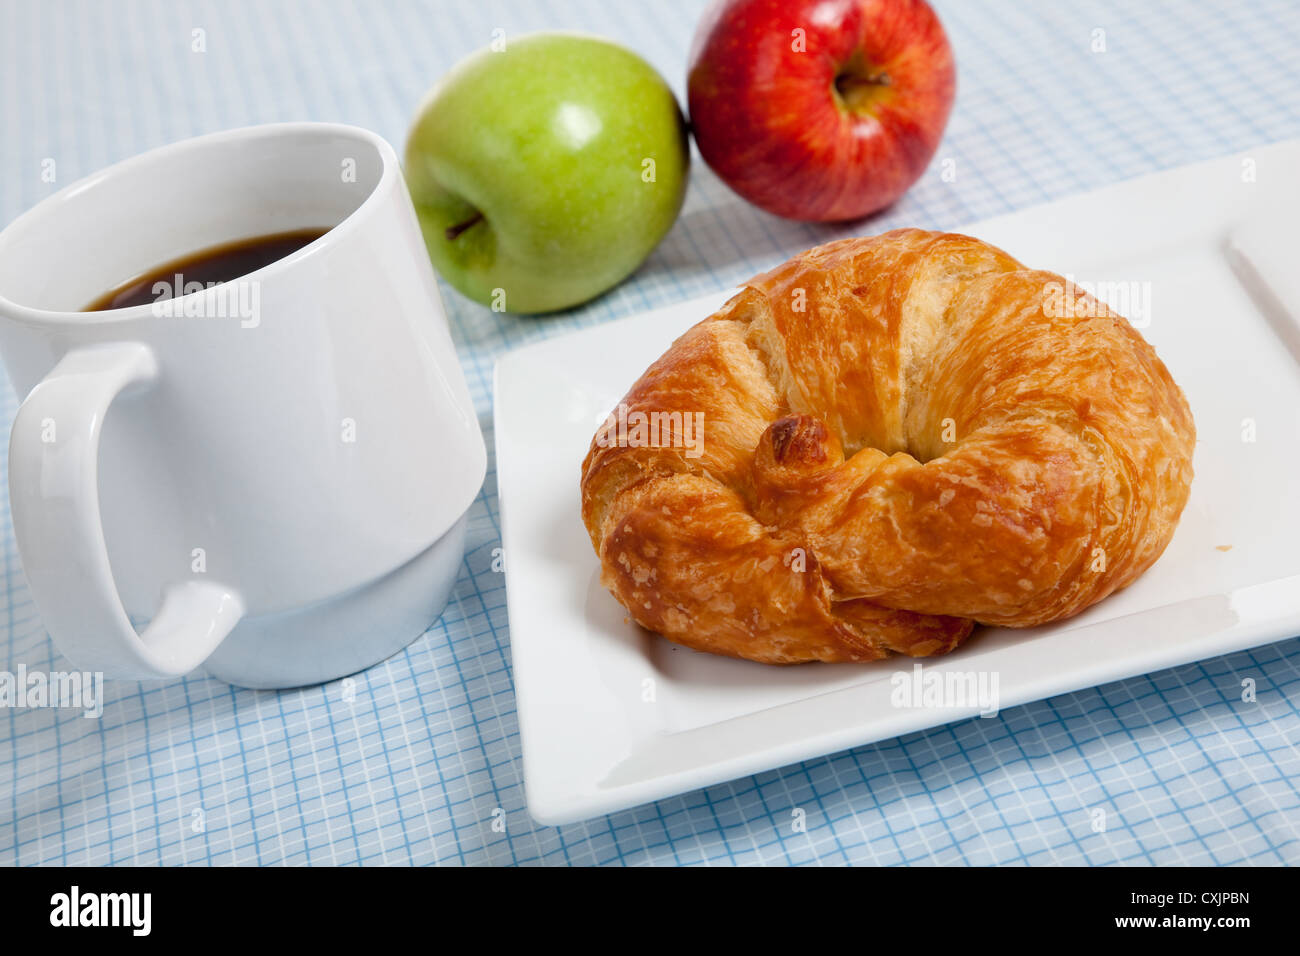 Croissant francesi su una piastra bianca con tazza di caffè e le mele su un gingham blu tovaglia Foto Stock